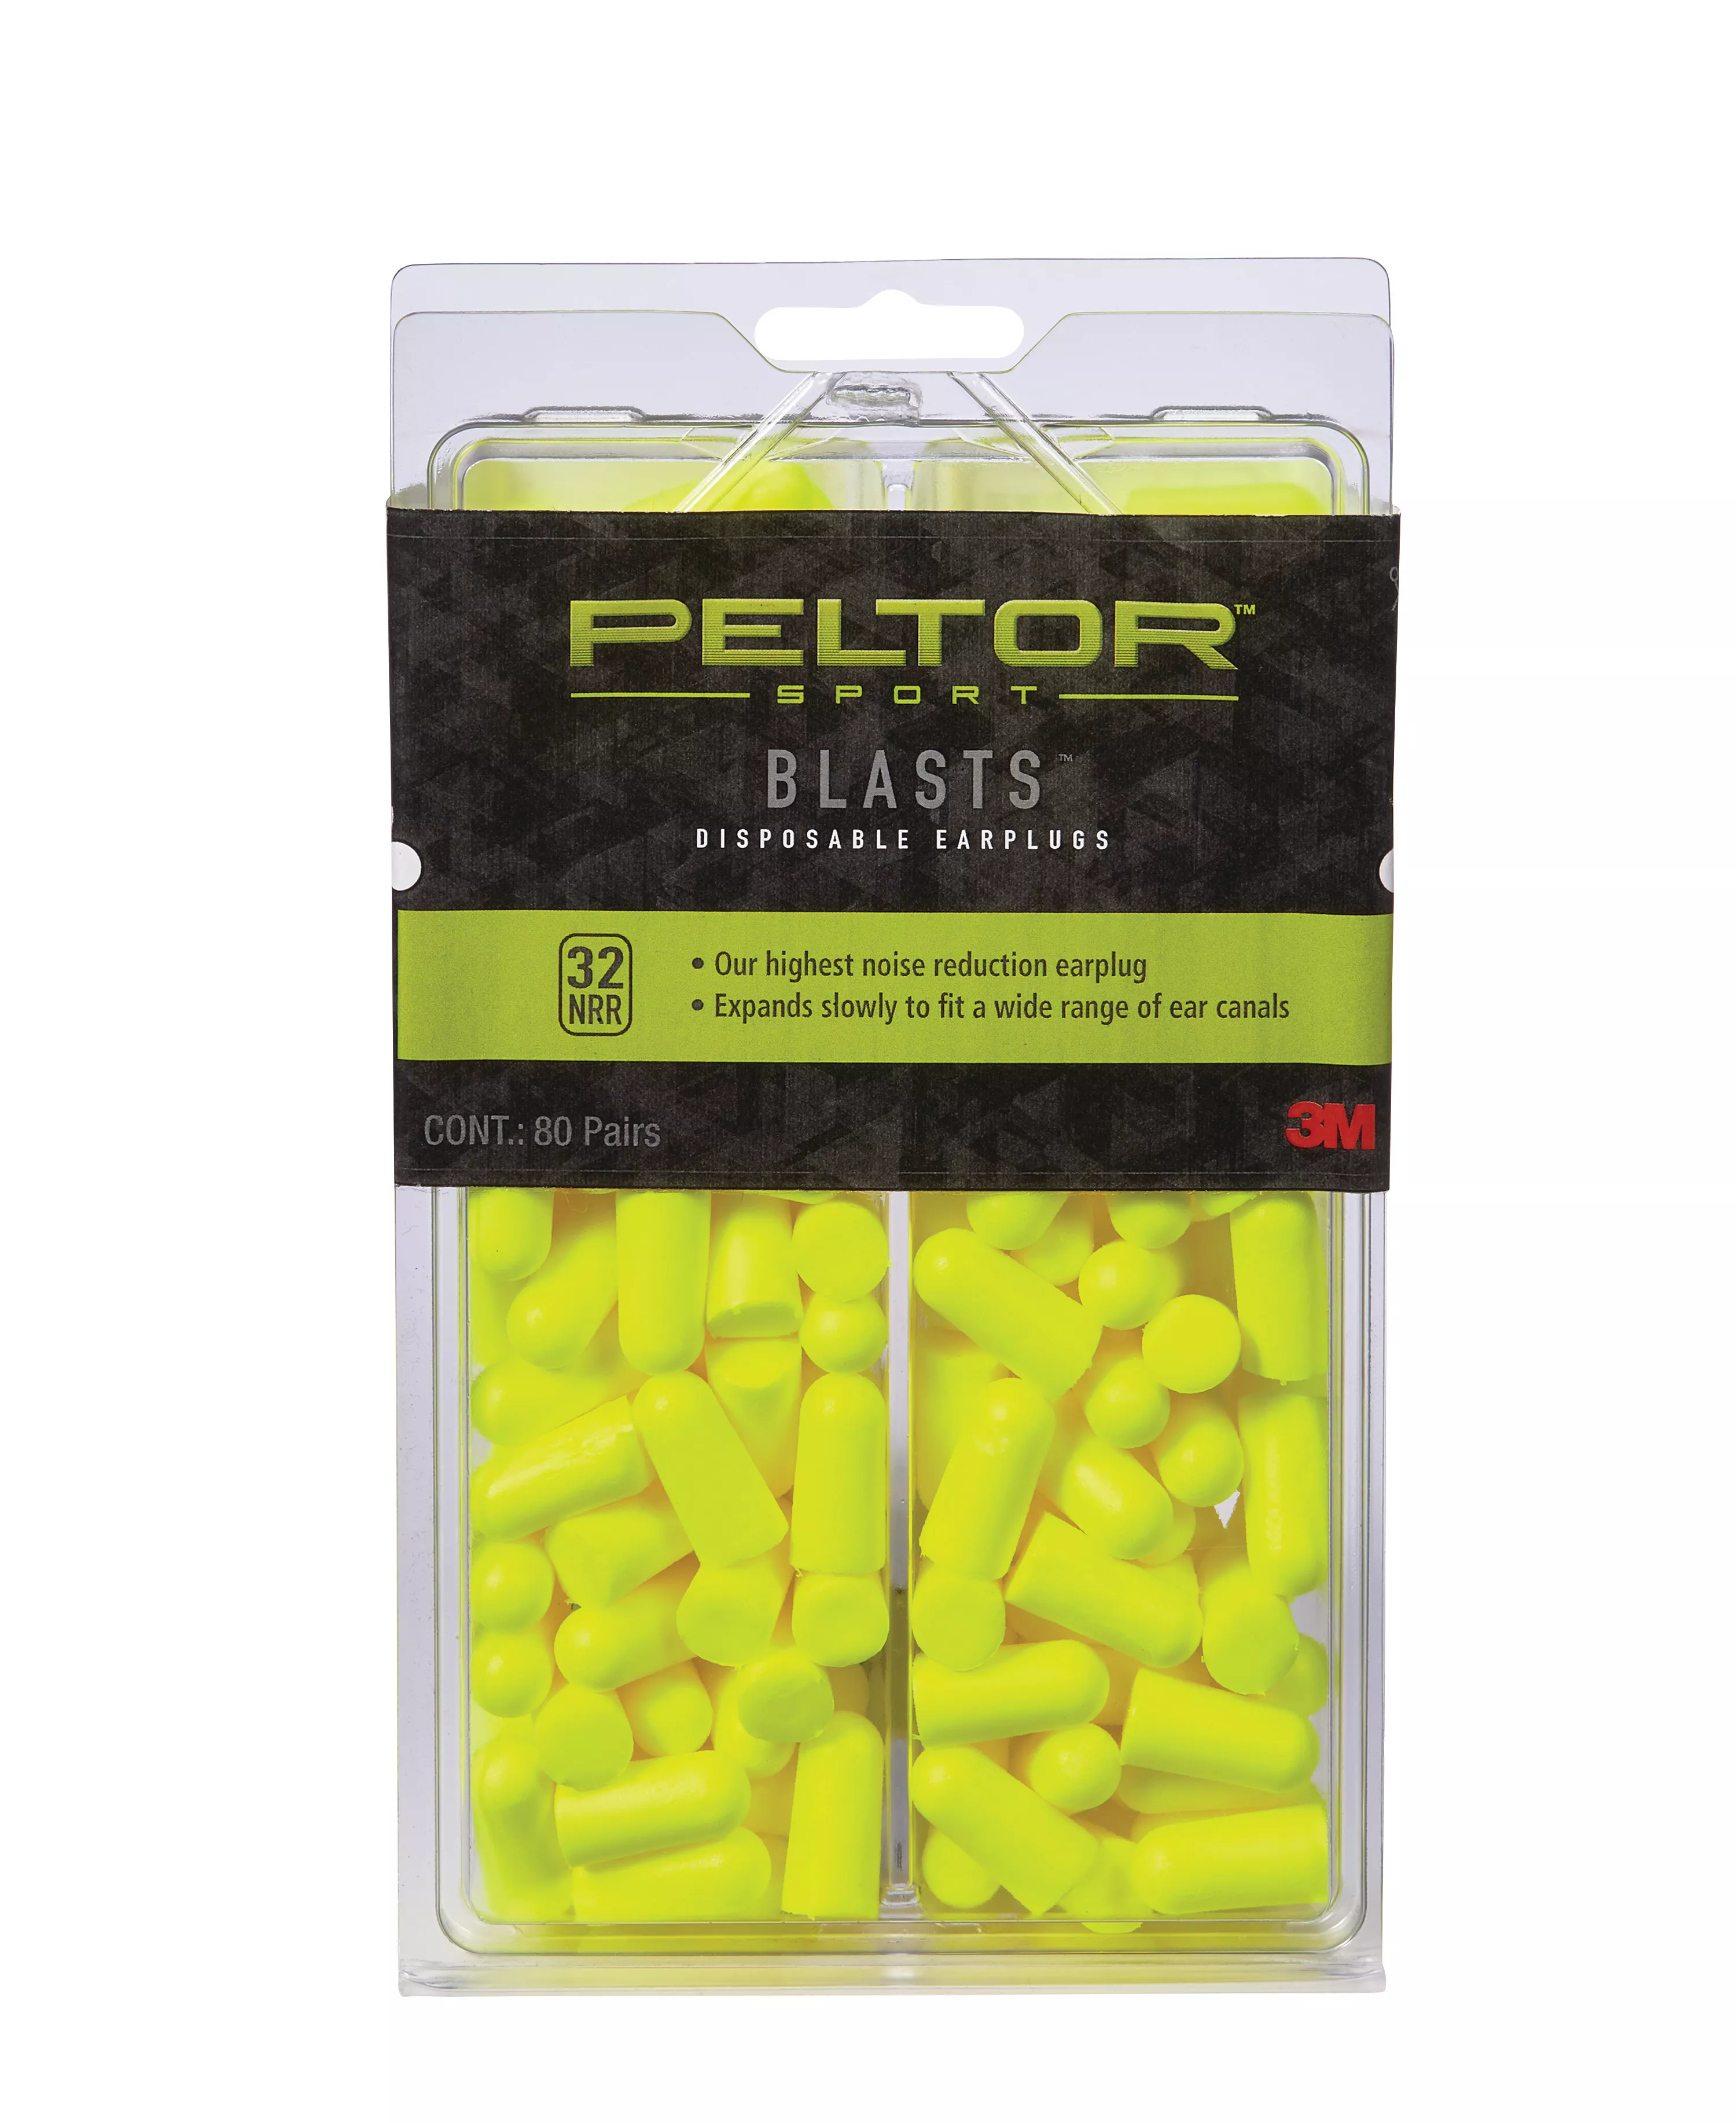 Peltor™ Sport Blasts™ Disposable Earplugs 97082-PEL80-6C, 80 ea/pk, Neon
Yellow